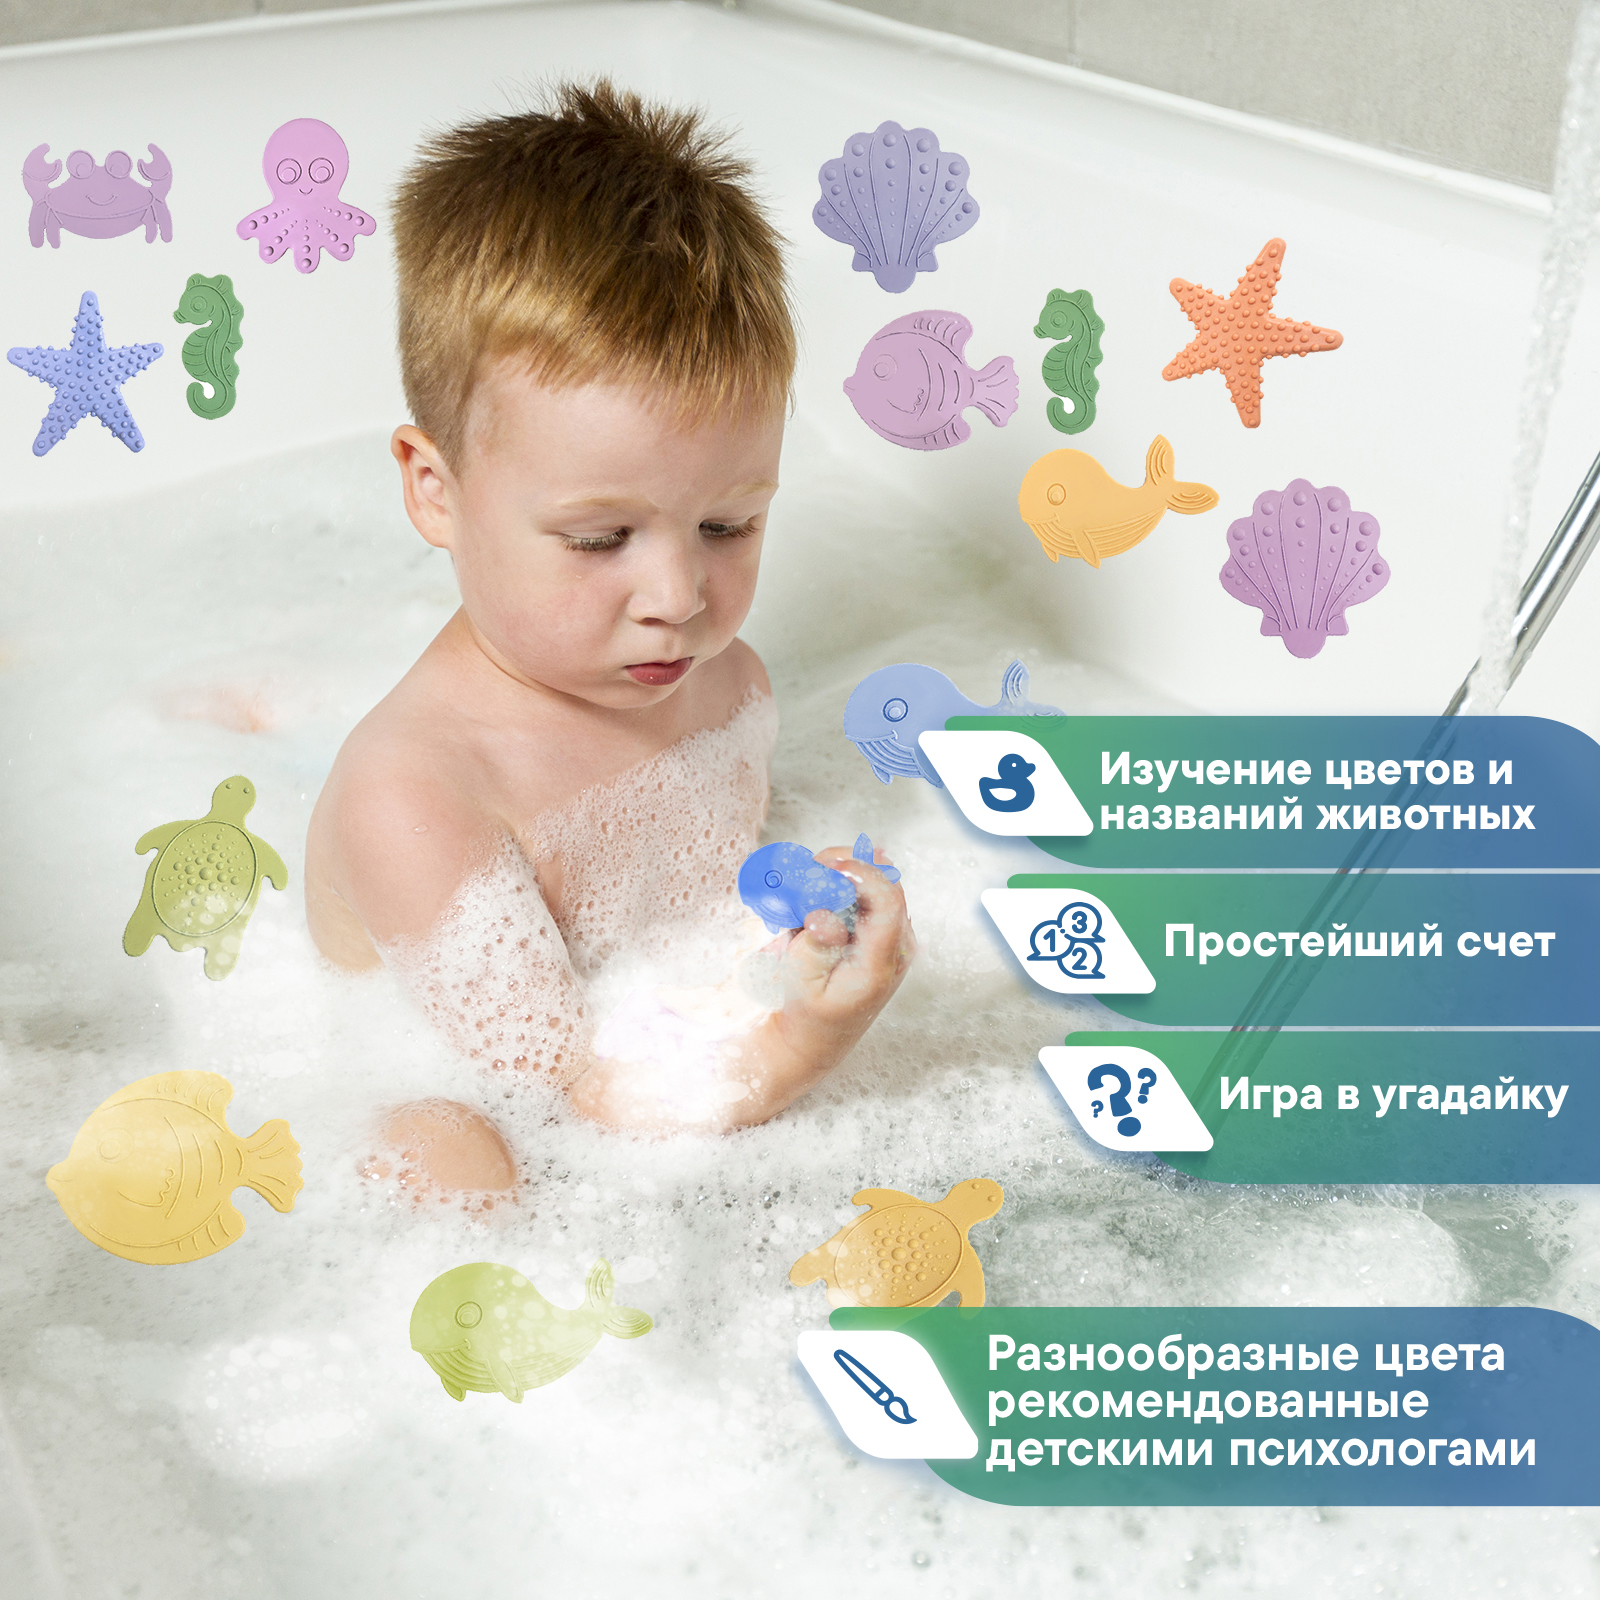 Набор мини-ковриков для ванной VILINA с присосками противоскользящие детские 8 шт. меняют цвет - фото 2